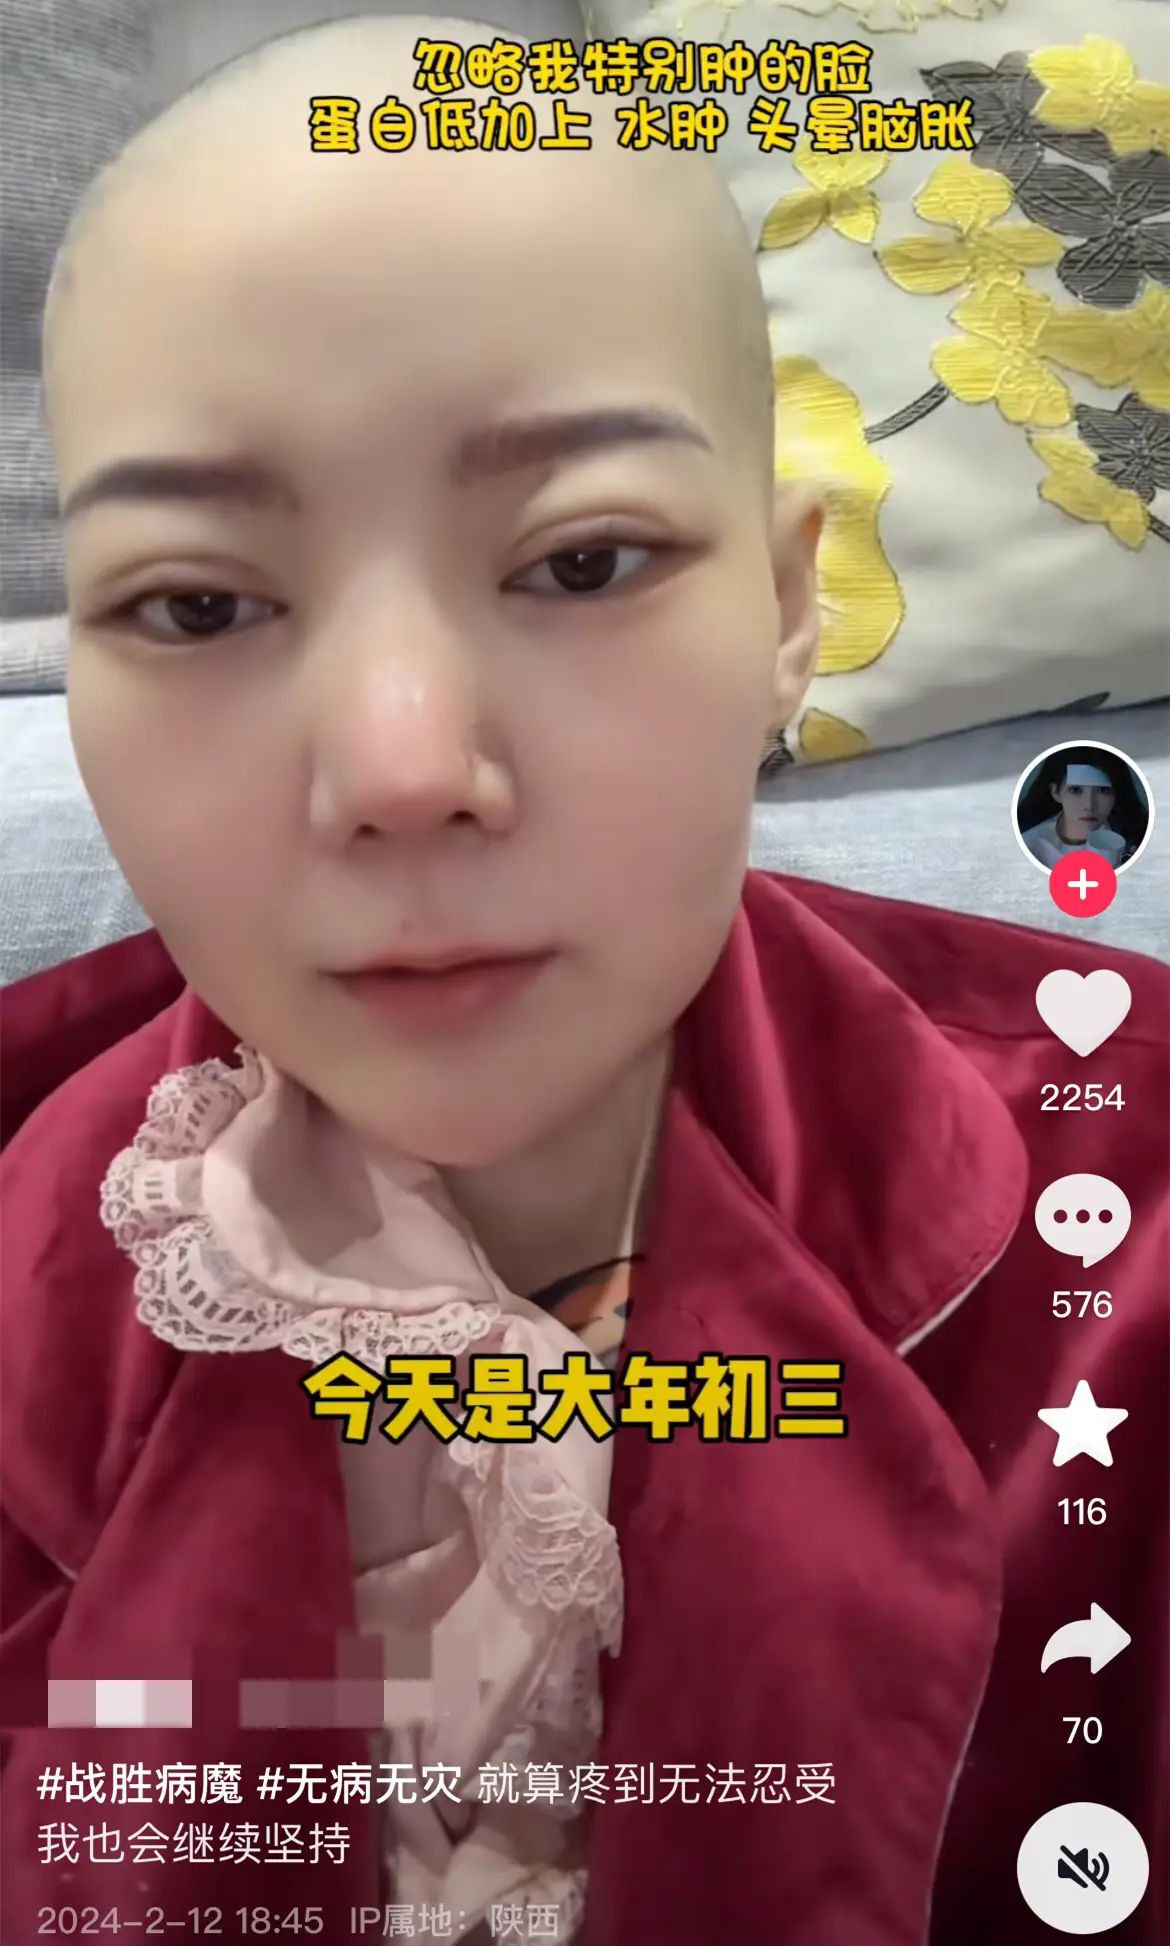 中國28歲網紅菲菲公主驚傳胃癌病逝生前最後畫面曝光